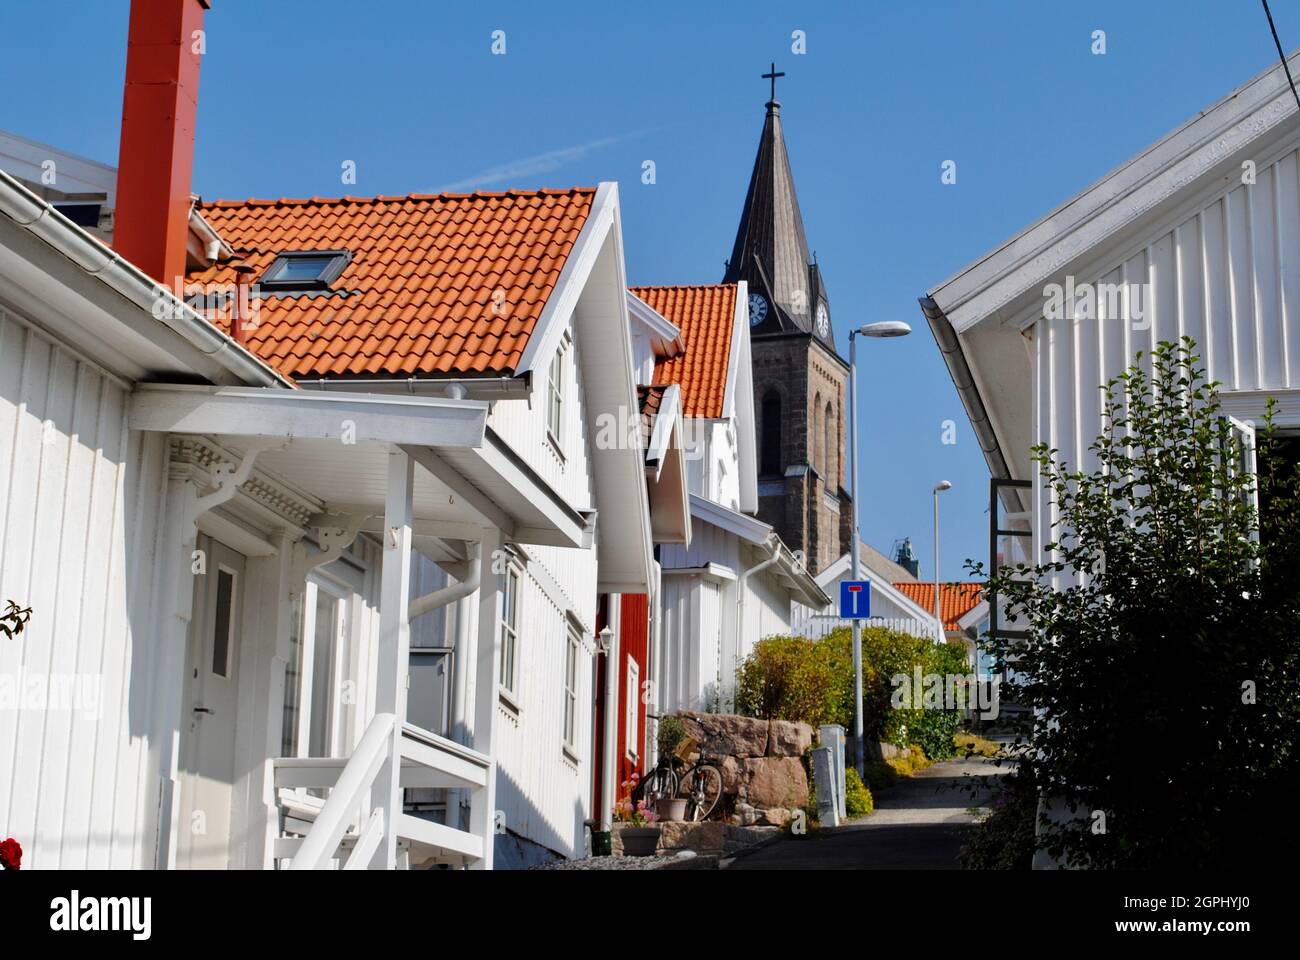 Petite rue et maisons anciennes dans le centre du village, Fjällbacka, Suède Banque D'Images